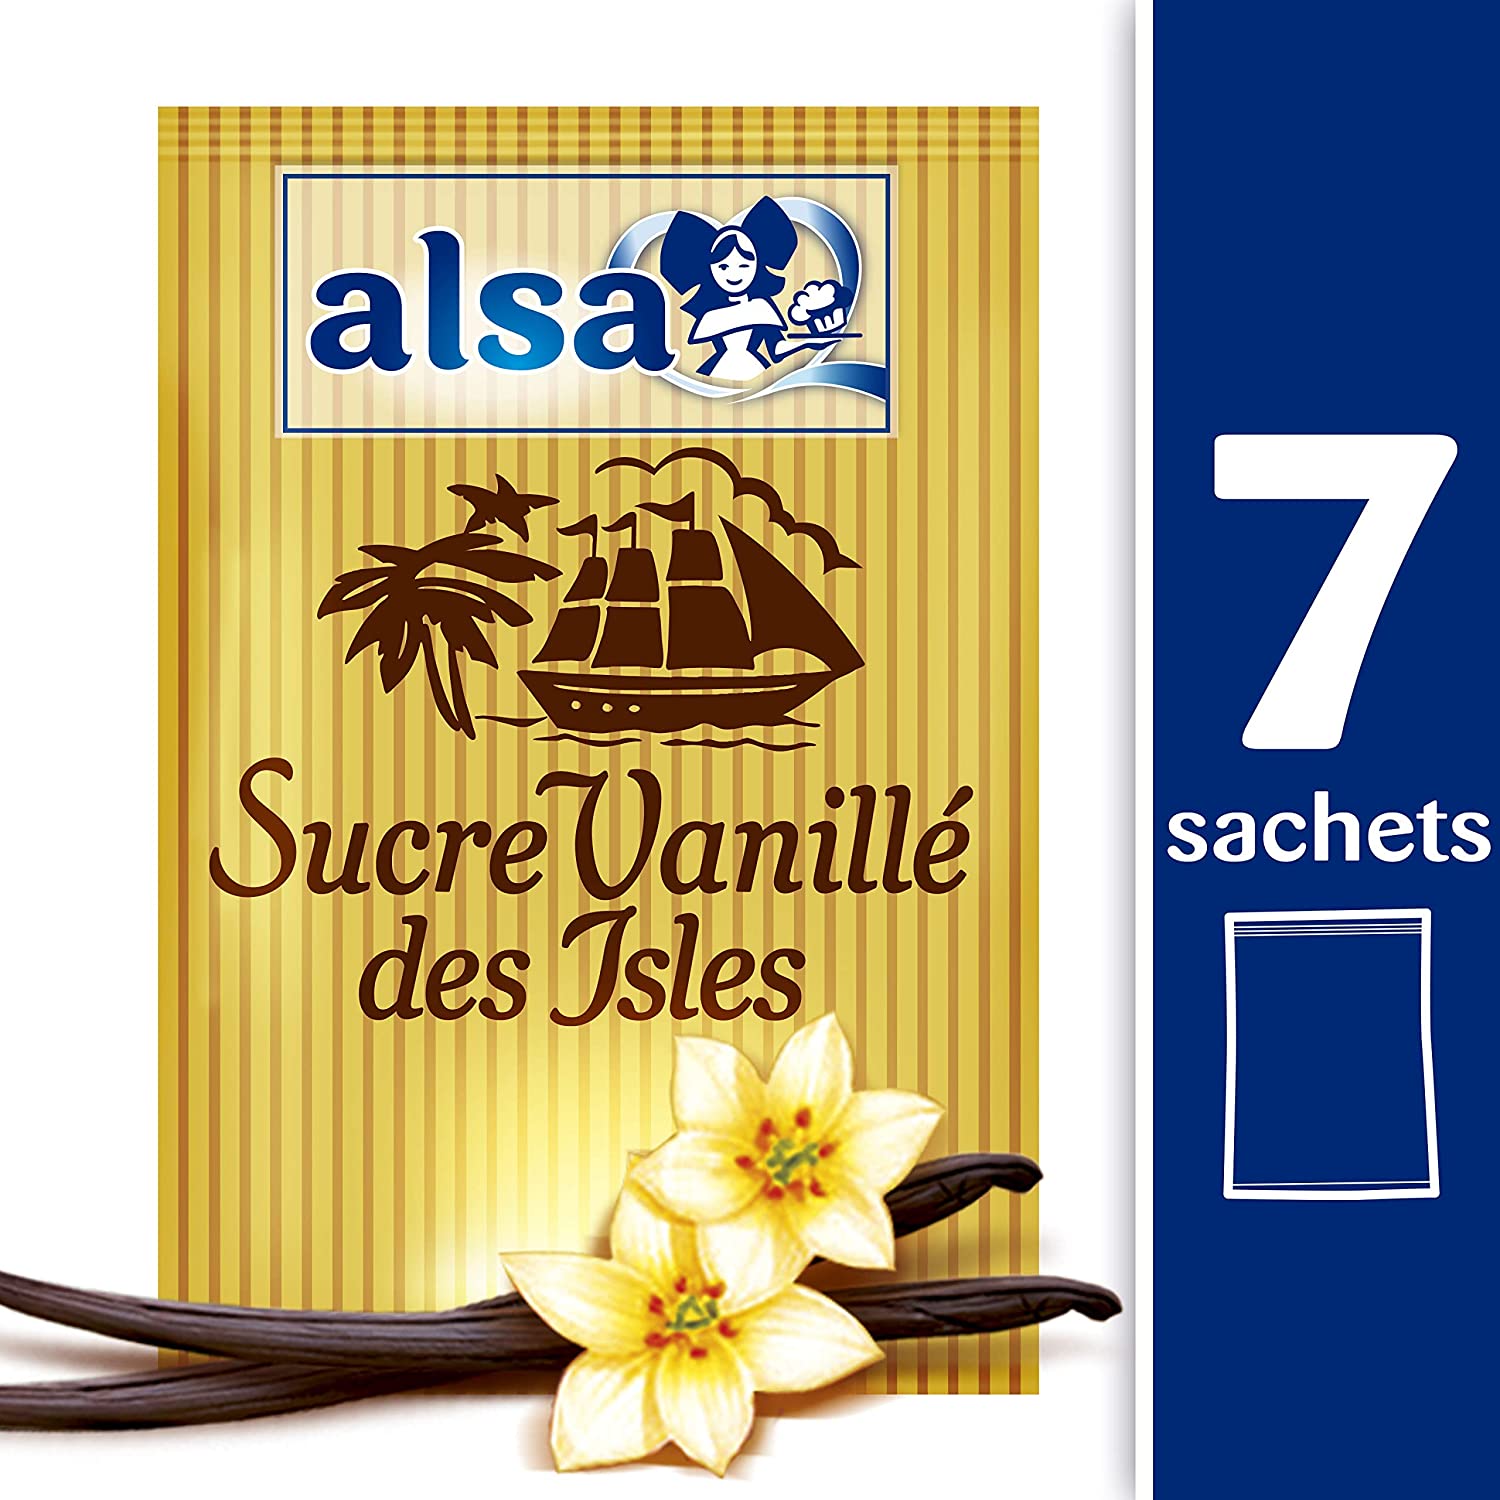 Sucre Vanillé à l'extrait naturel de vanille - Alsa - 7.5 g